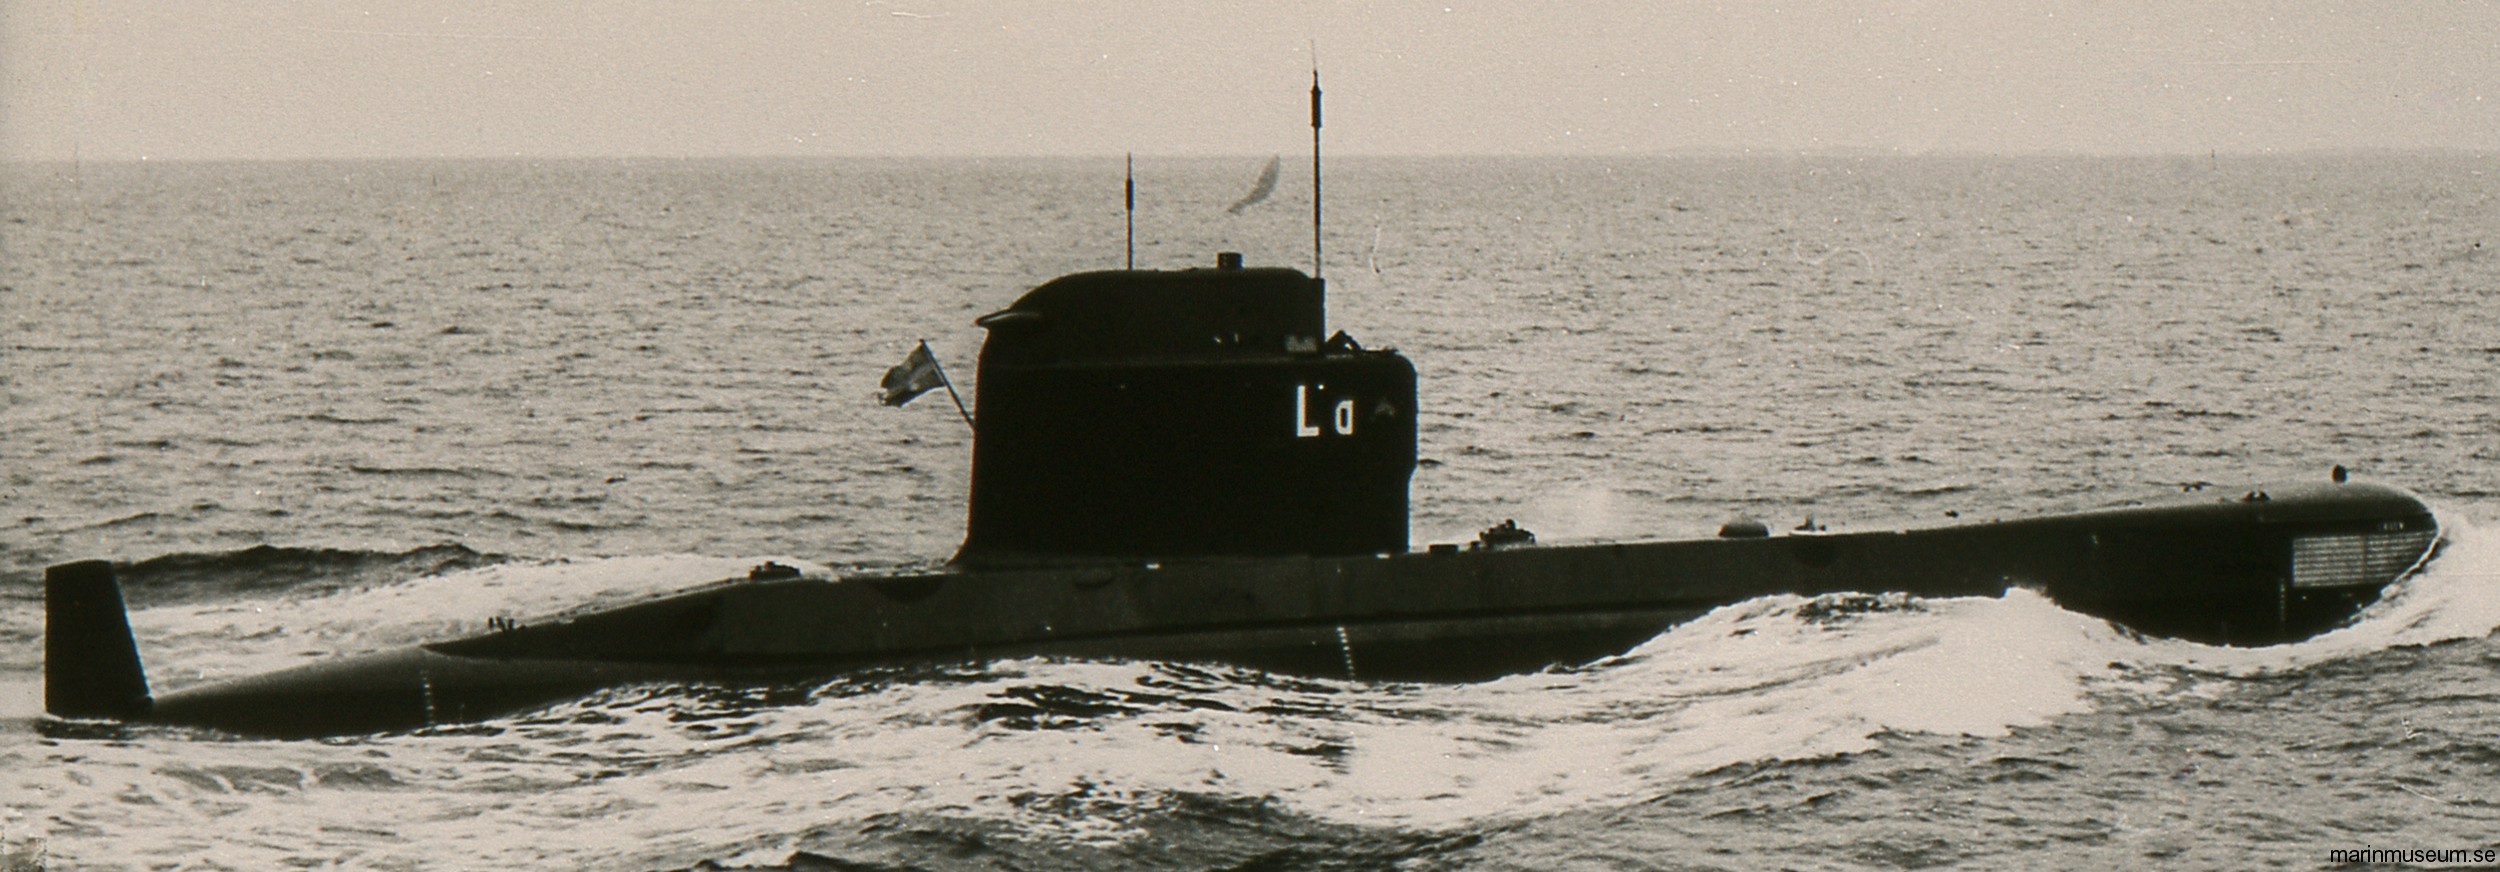 hms hswms laxen aborren a13 class attack submarine ubåt swedish navy svenska marinen försvarsmakten 02